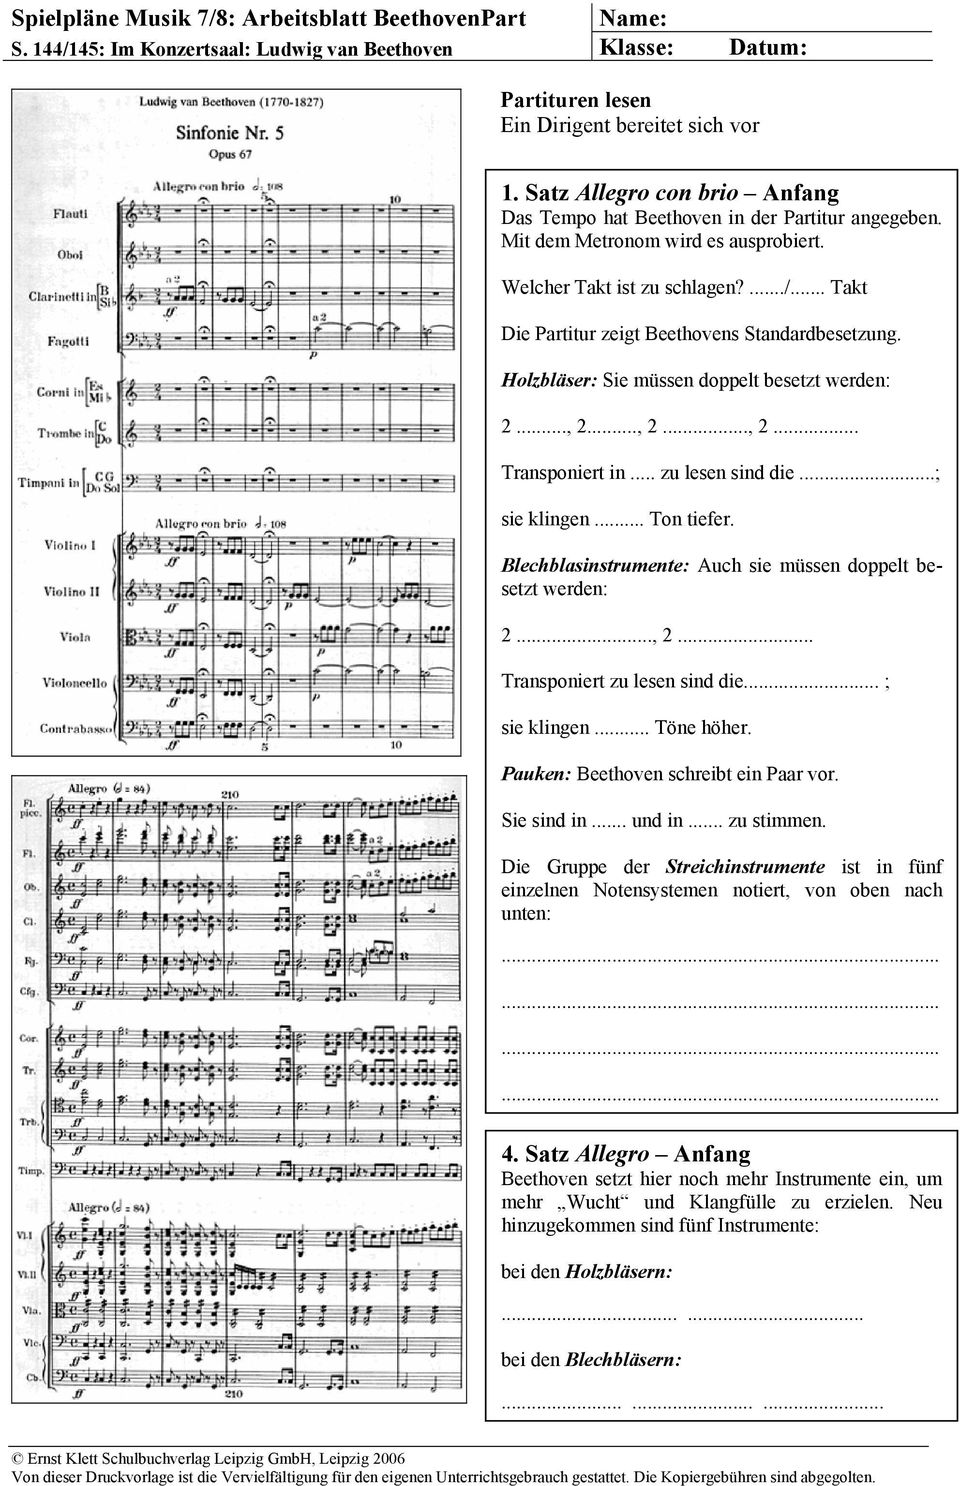 .. Takt Die Partitur zeigt Beethovens Standardbesetzung. Holzbläser: Sie müssen doppelt besetzt werden: 2..., 2..., 2..., 2... Transponiert in... zu lesen sind die...; sie klingen... Ton tiefer.